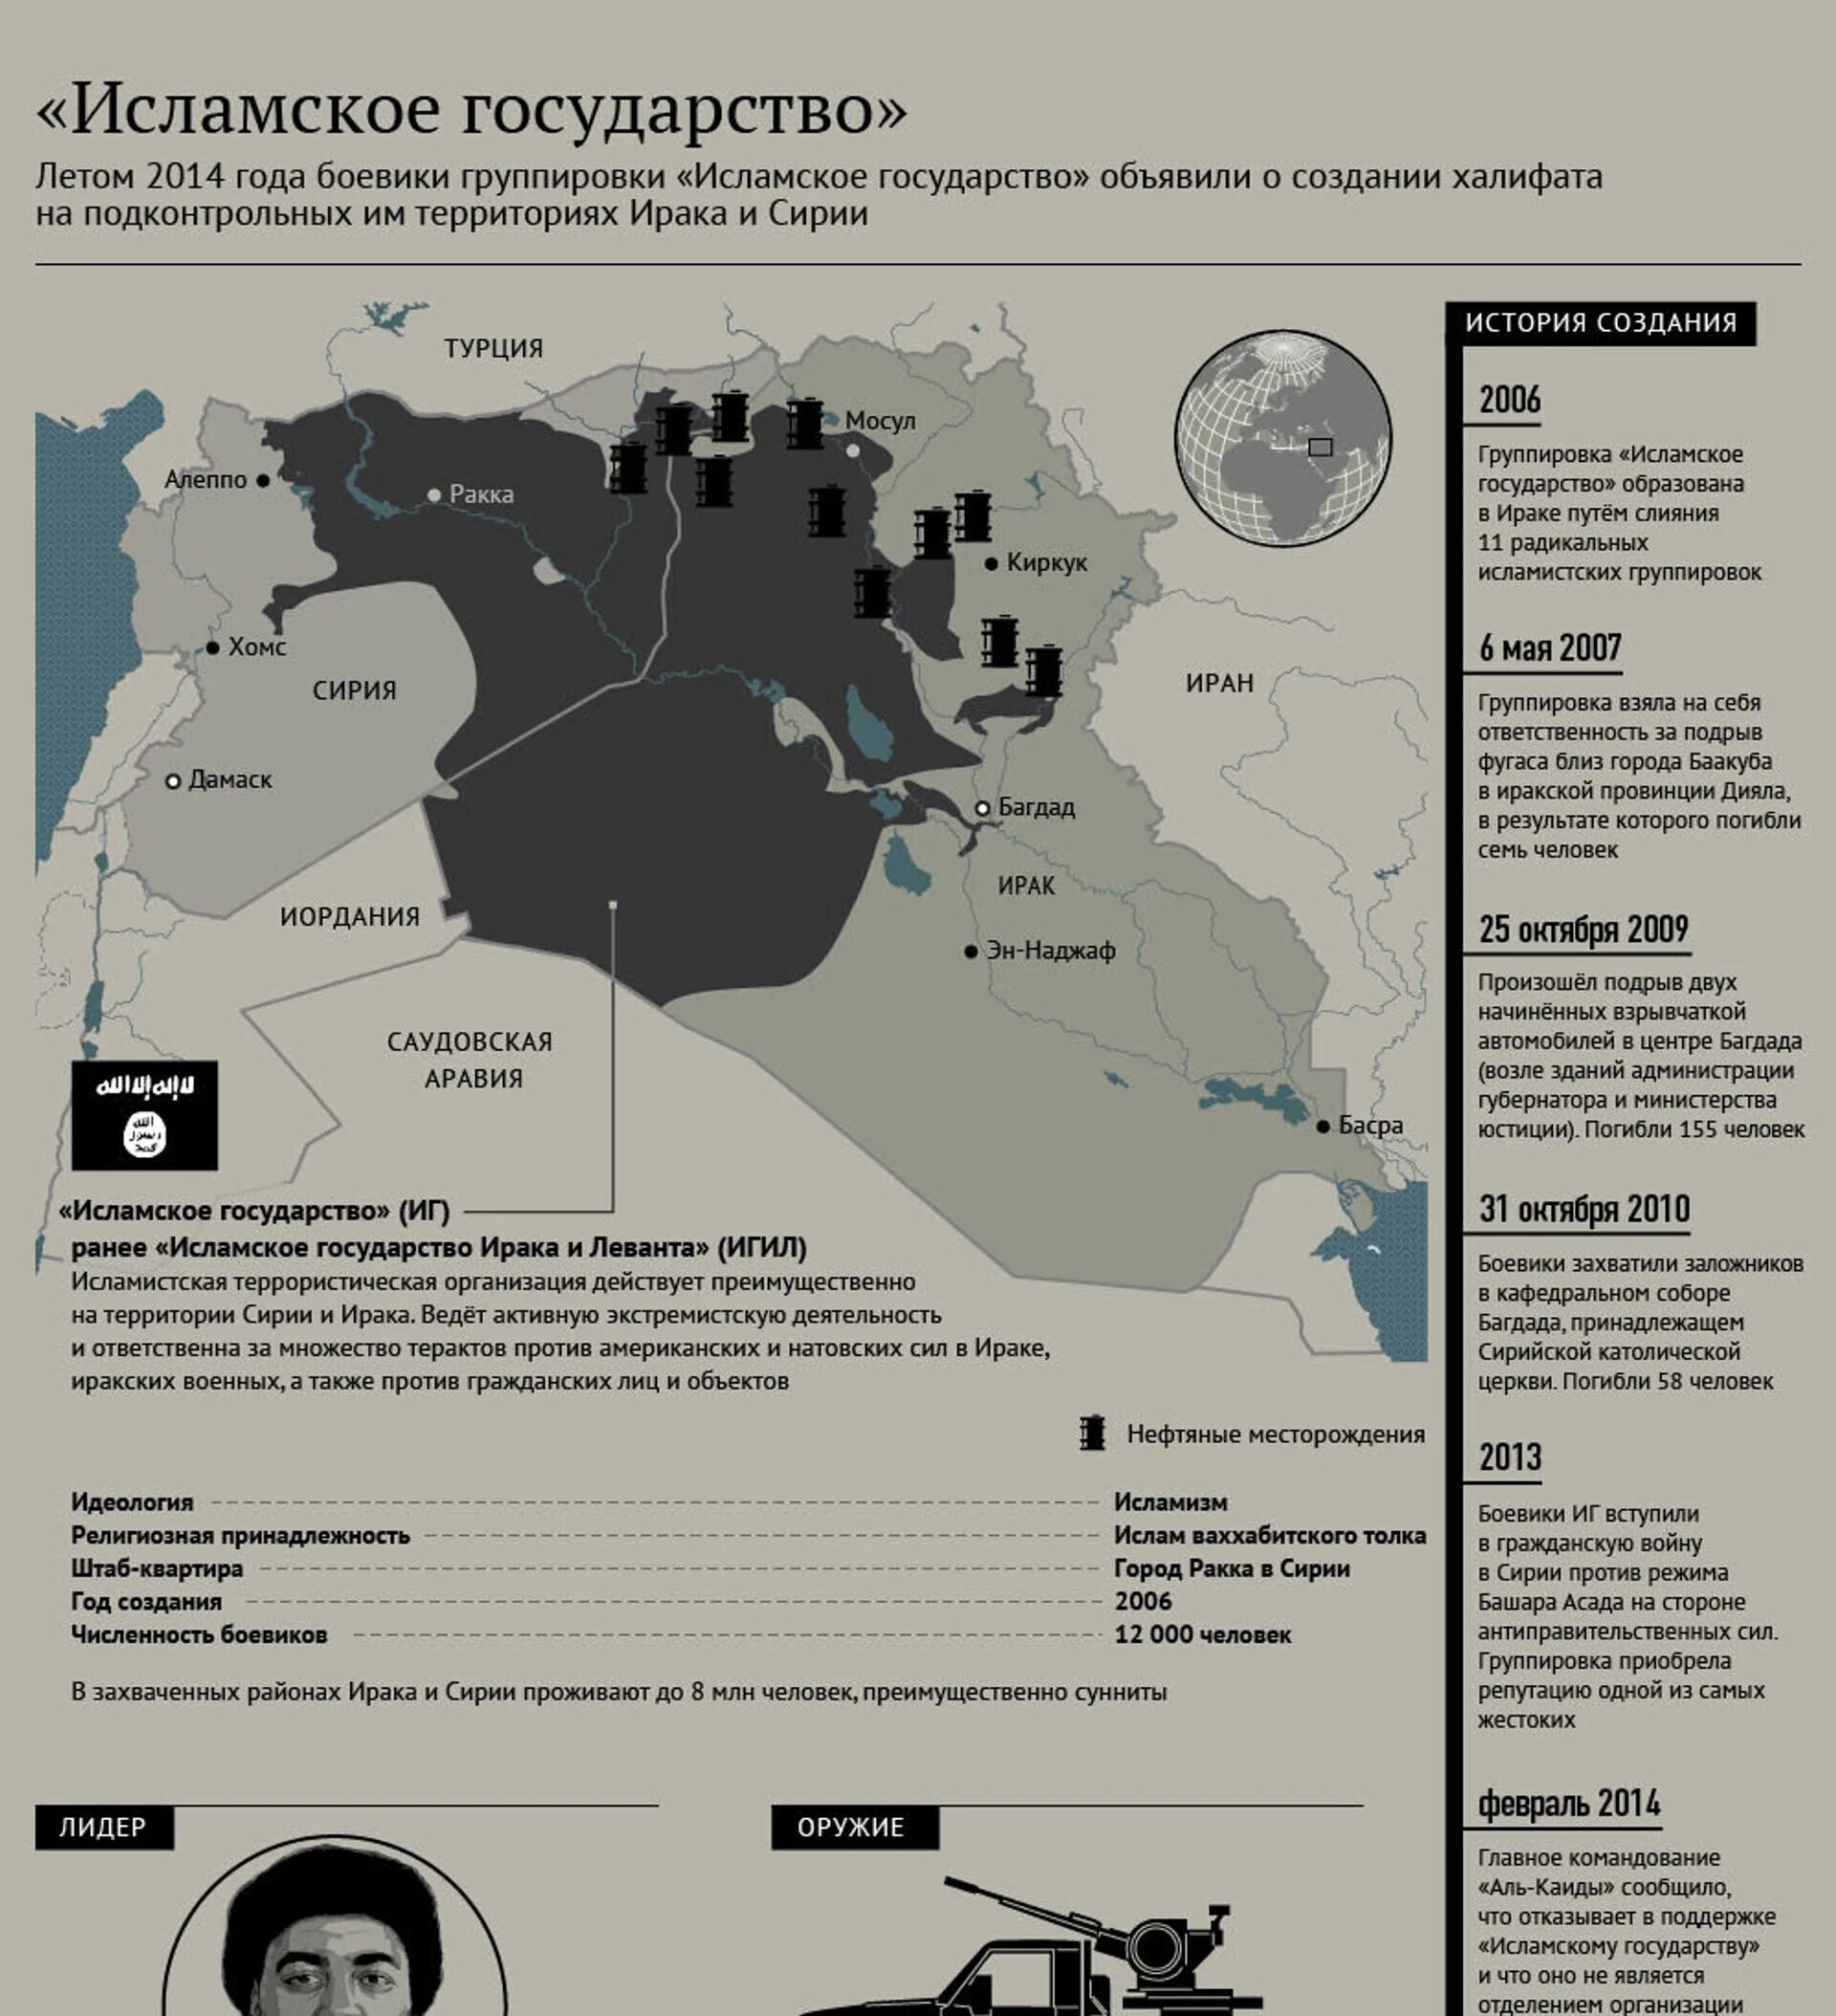 Территория ИГИЛ В Сирии. Исламское государство Ирака и Сирии карта. Исламское государство Ирака и Леванта на карте. ИГИЛ территория 2021. Иг на карте